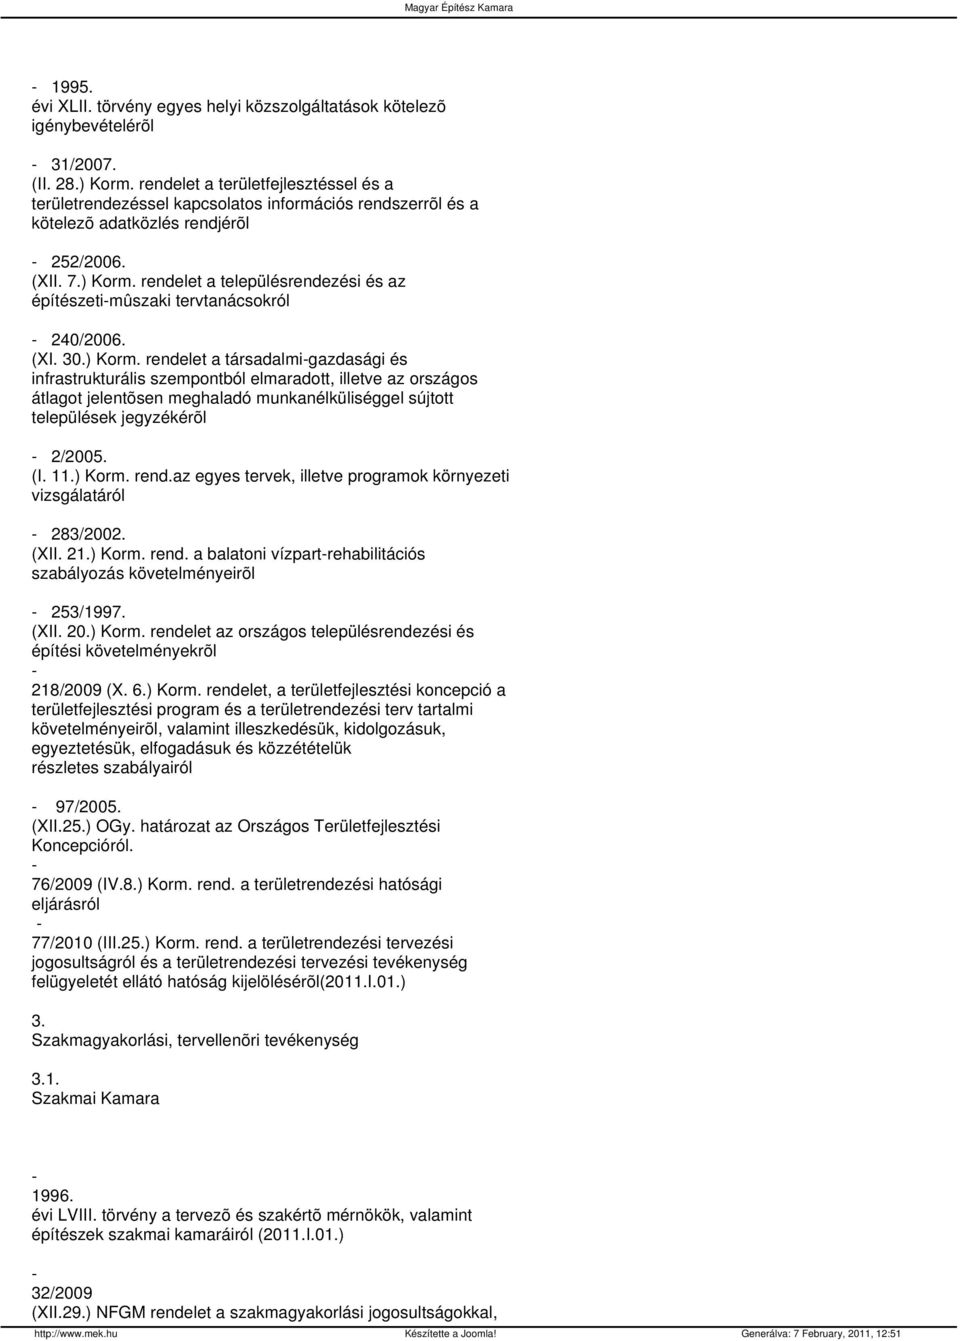 rendelet a településrendezési és az építészetimûszaki tervtanácsokról 240/2006. (XI. 30.) Korm.